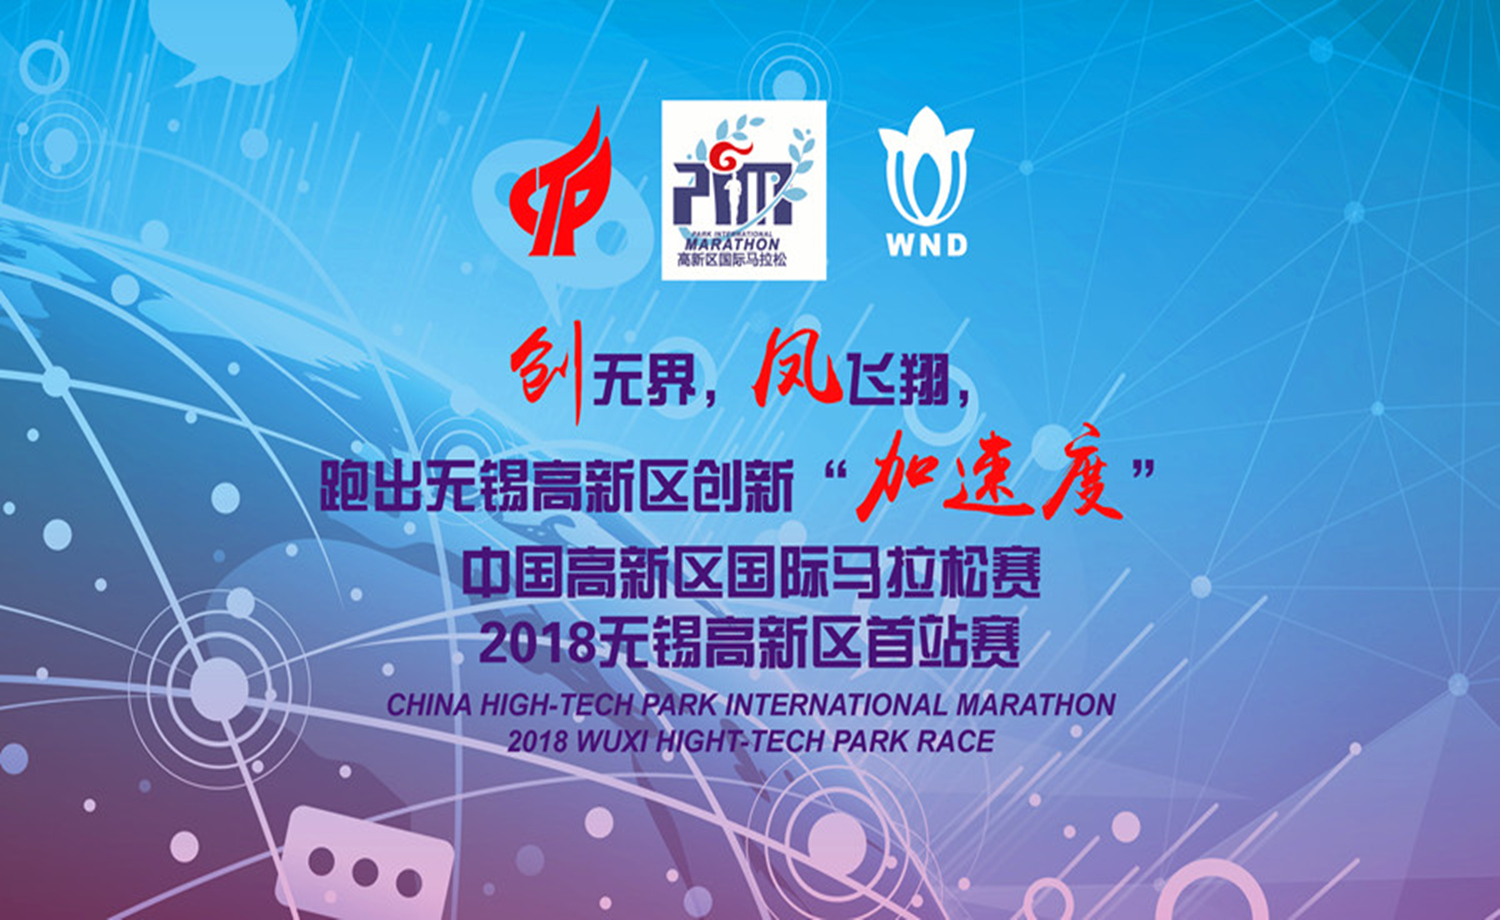 中国高新区国际马拉松赛2018无锡高新区首站赛